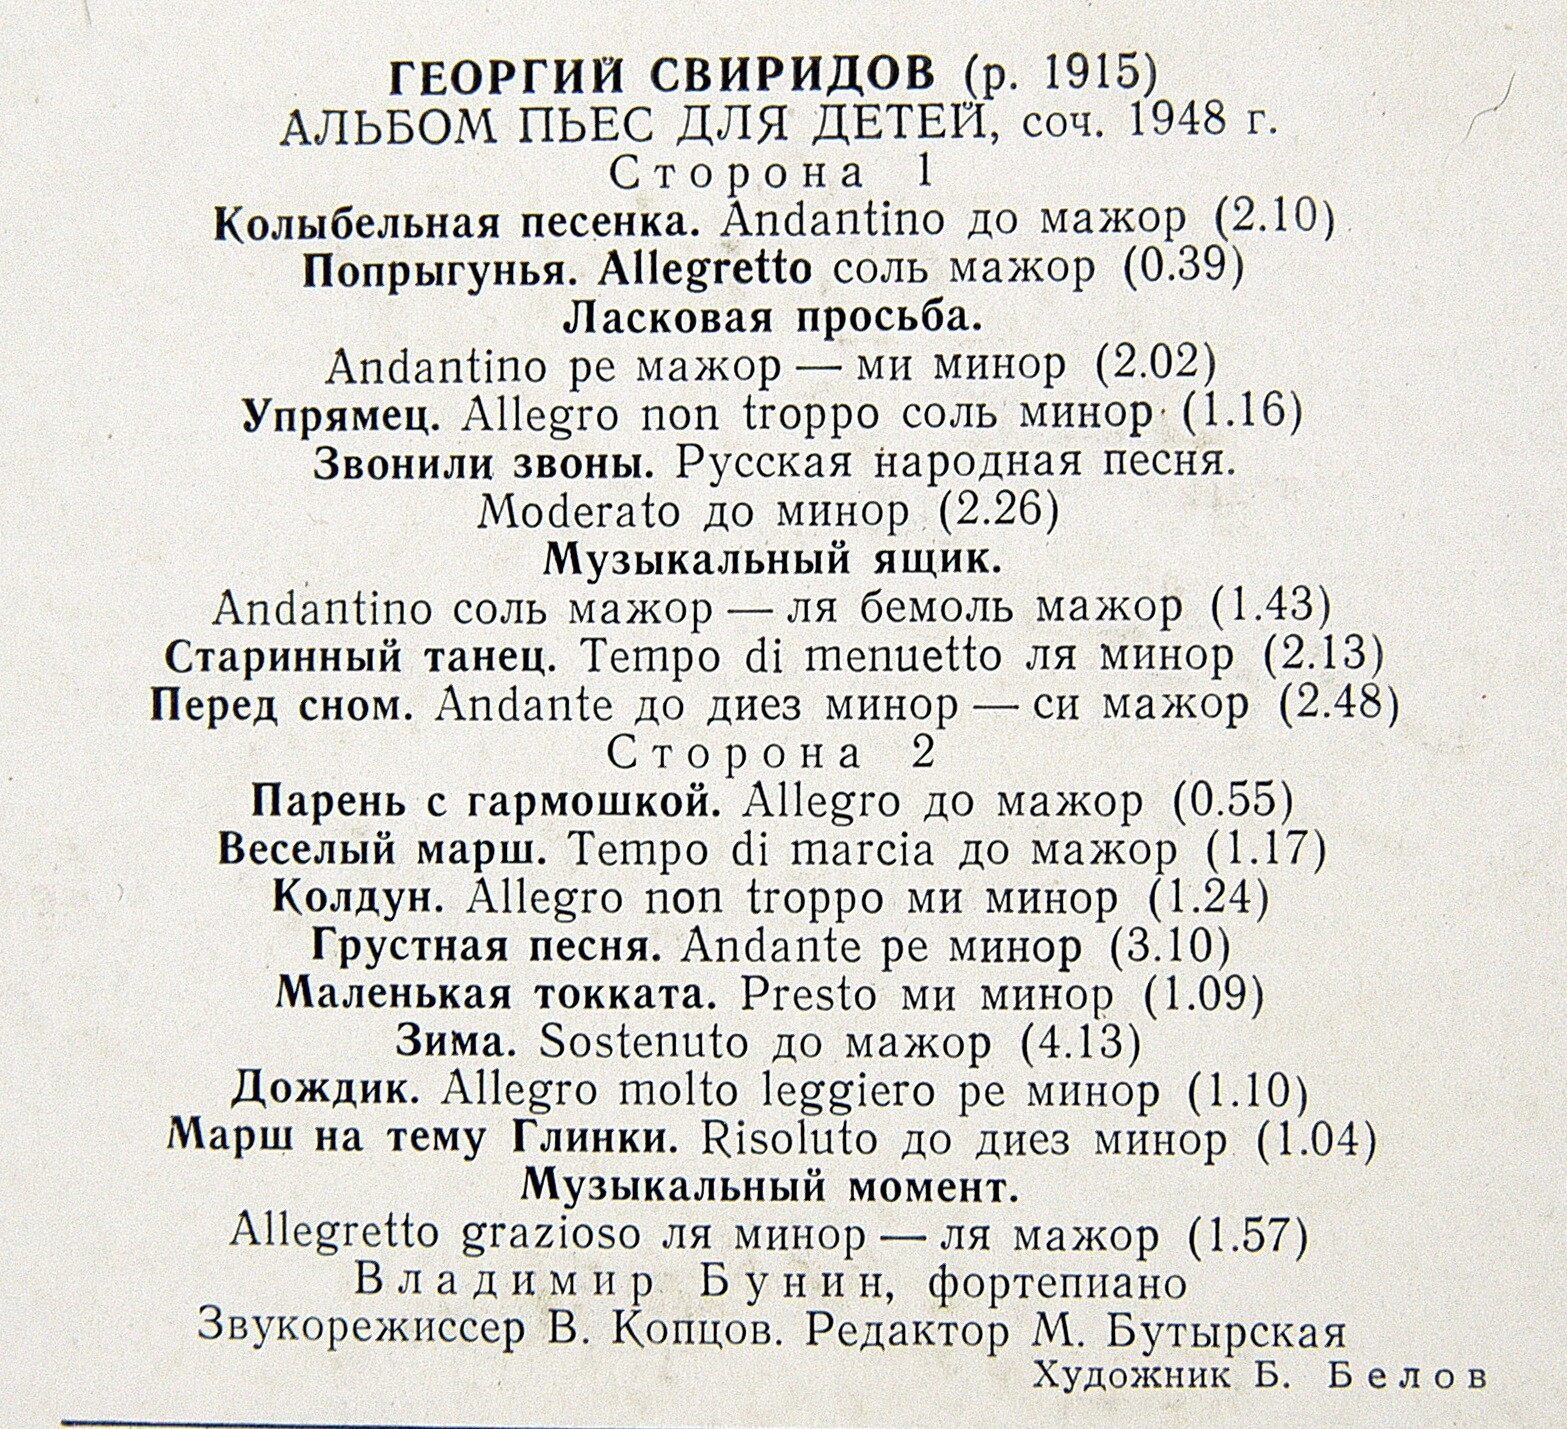 Г. СВИРИДОВ (1915): Альбом пьес для детей.